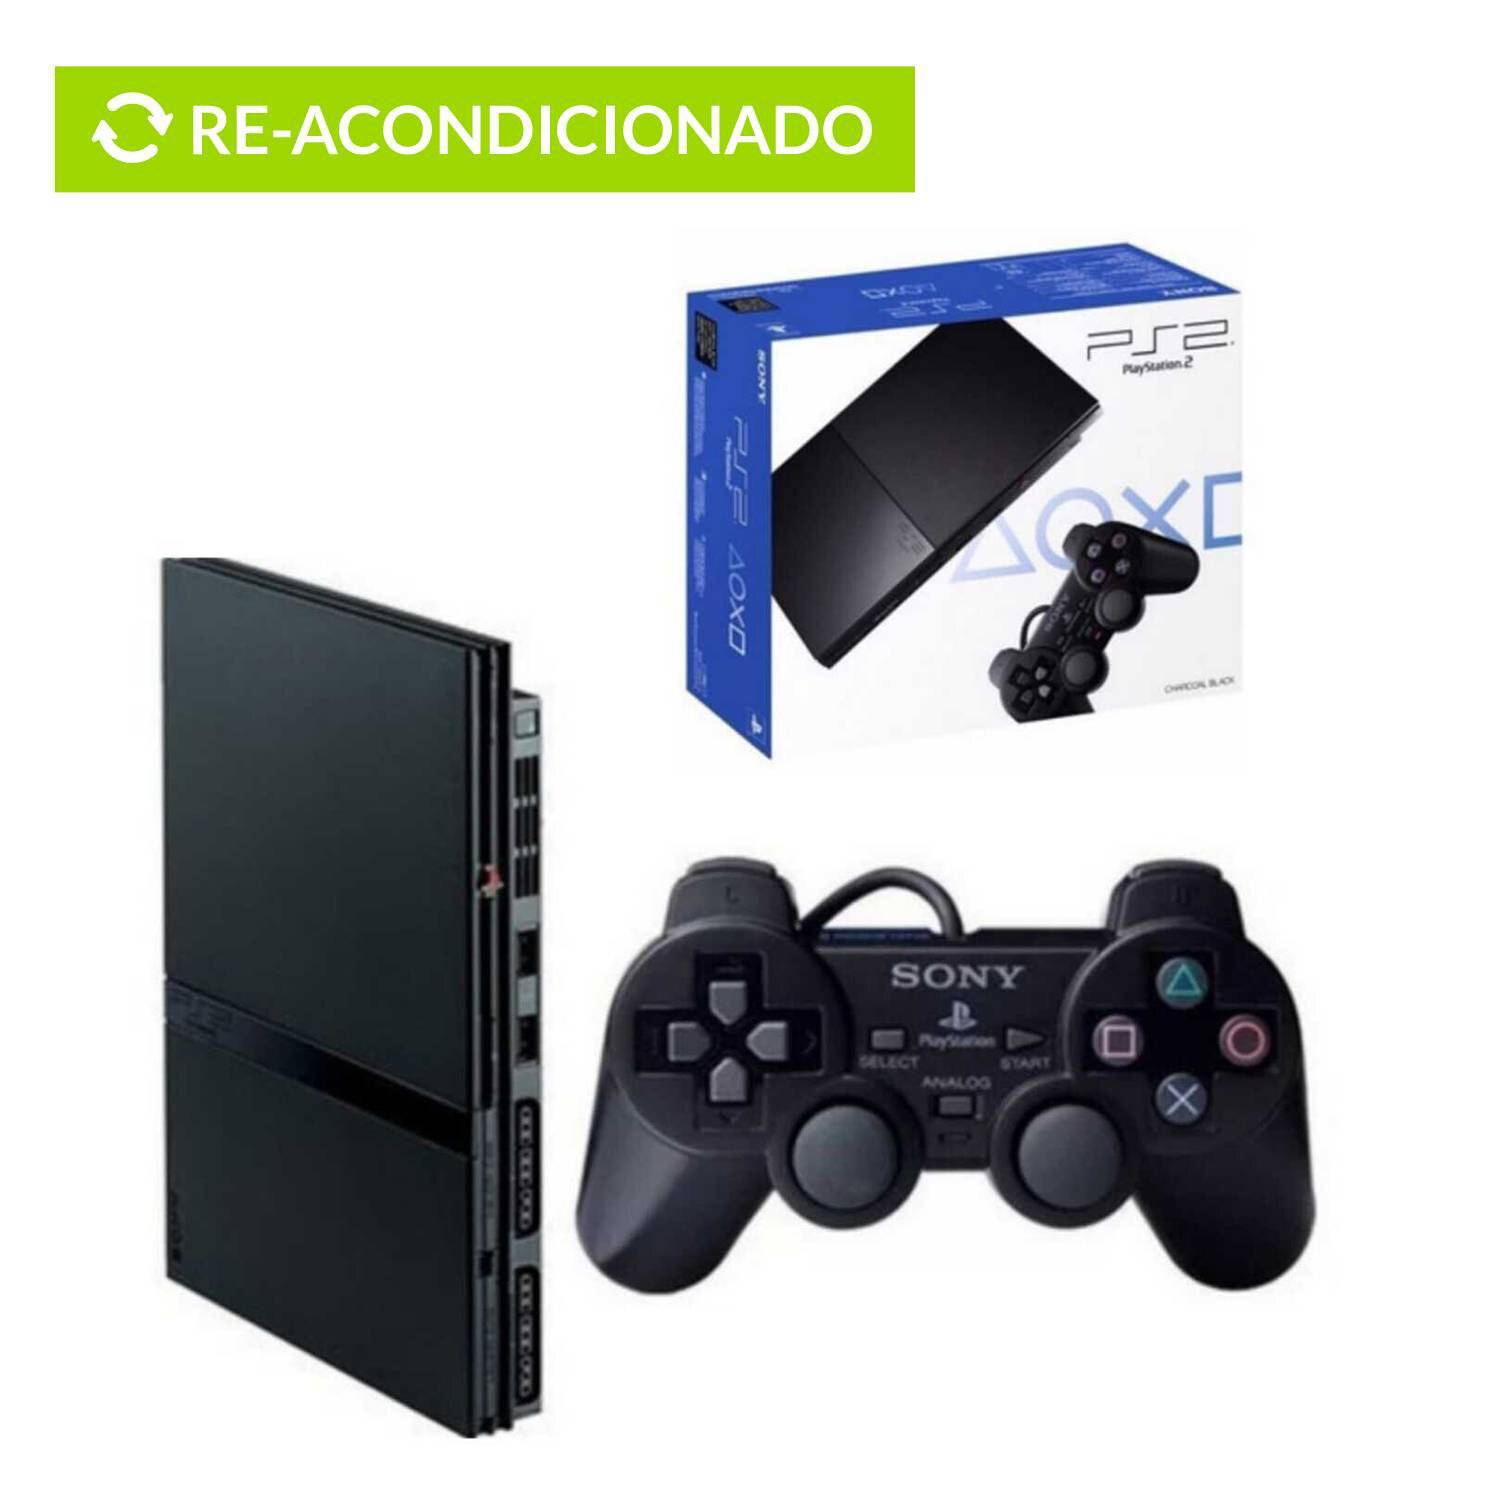 Playstation 2 Reacondicionado Consola con - REACONDICIONADO SONY